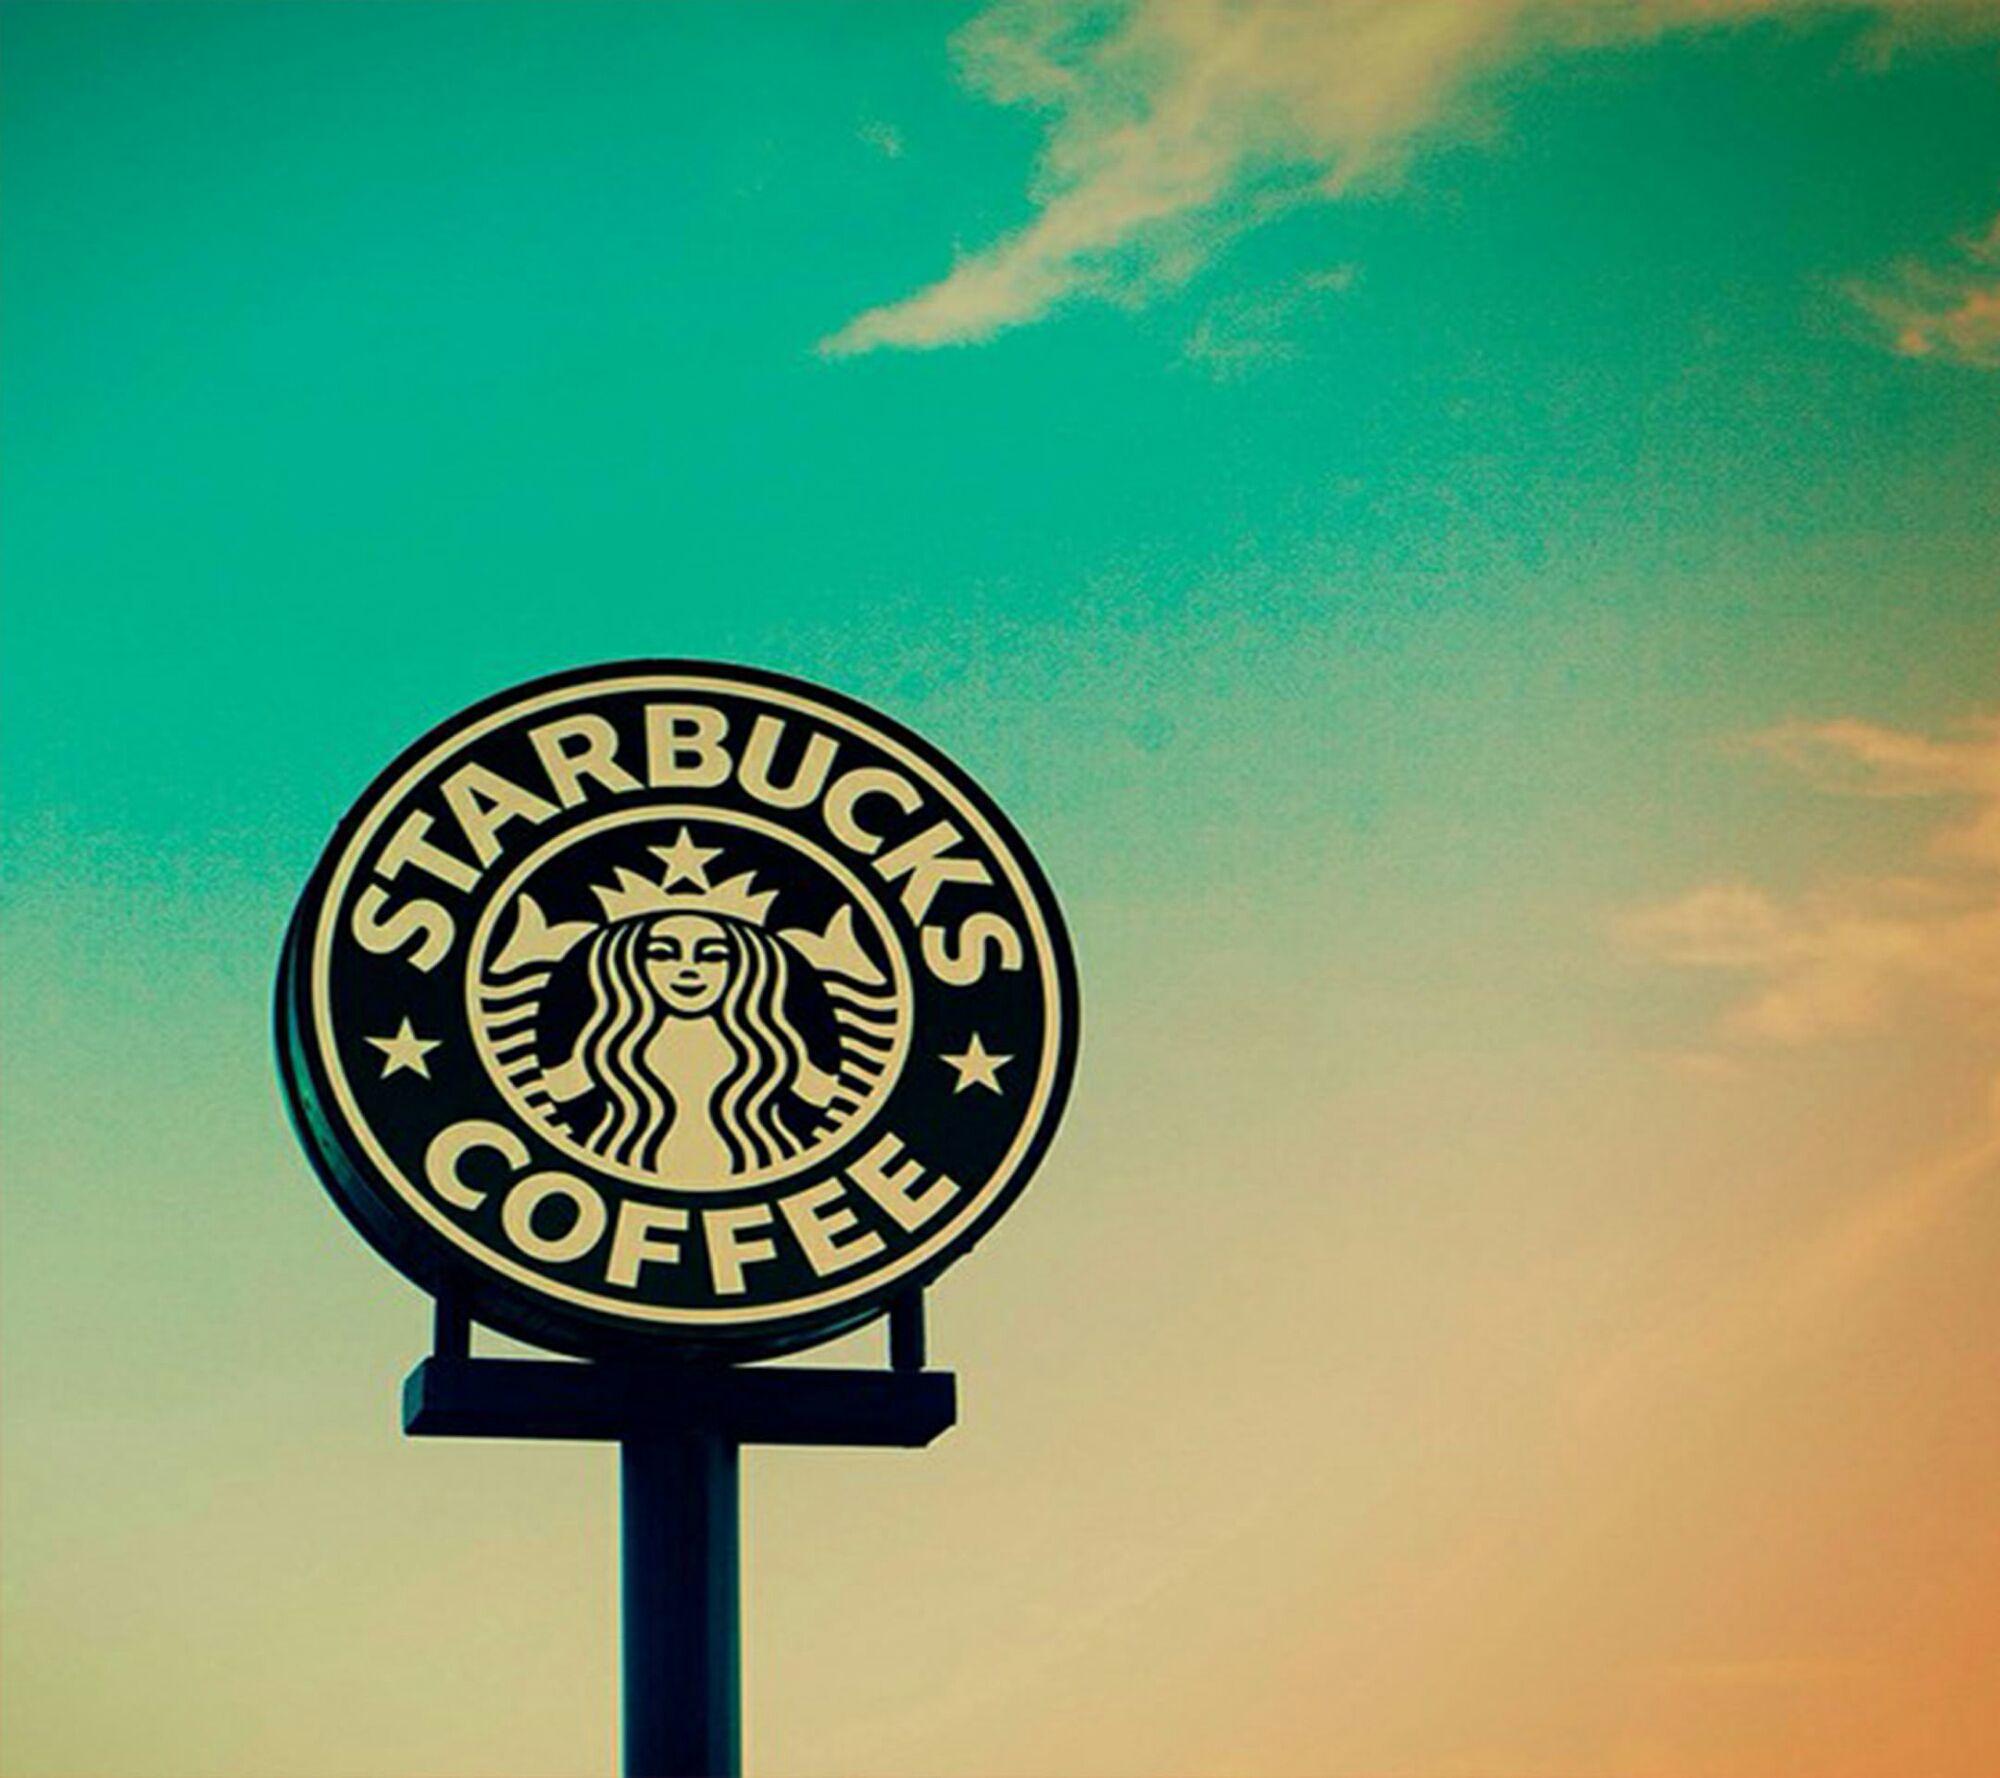 Cute Starbucks Wallpaper Tumblr. Download Wallpaper